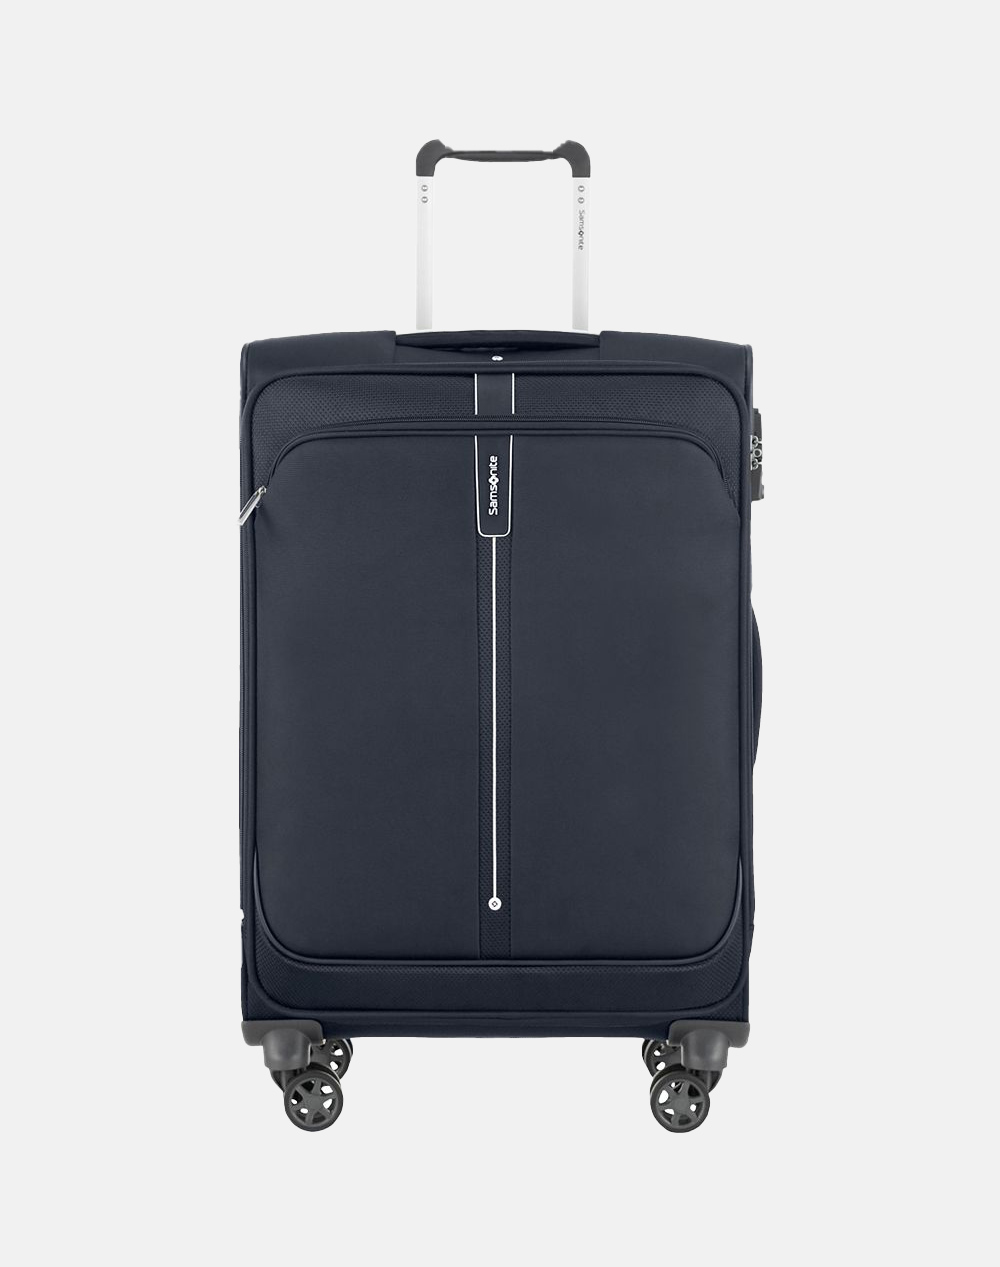 SAMSONITE Suitcase (Dimensions: 66 x 44 x 28/31 cm)